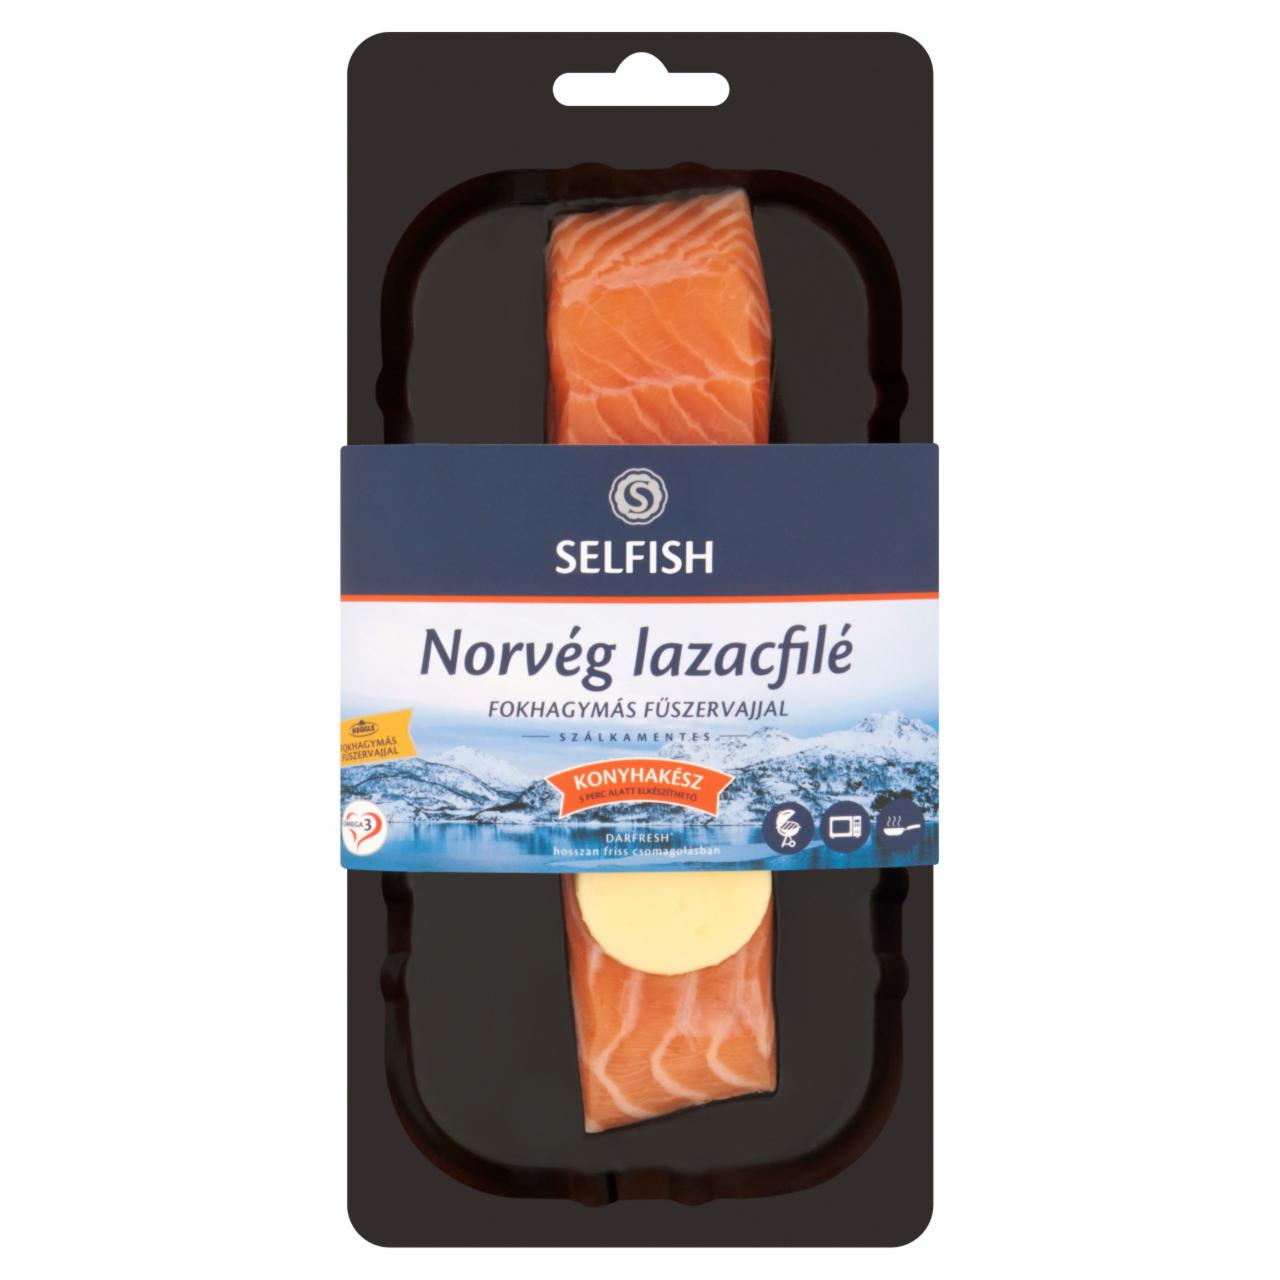 Képek - Selfish norvég lazacfilé fokhagymás fűszervajjal 160 g